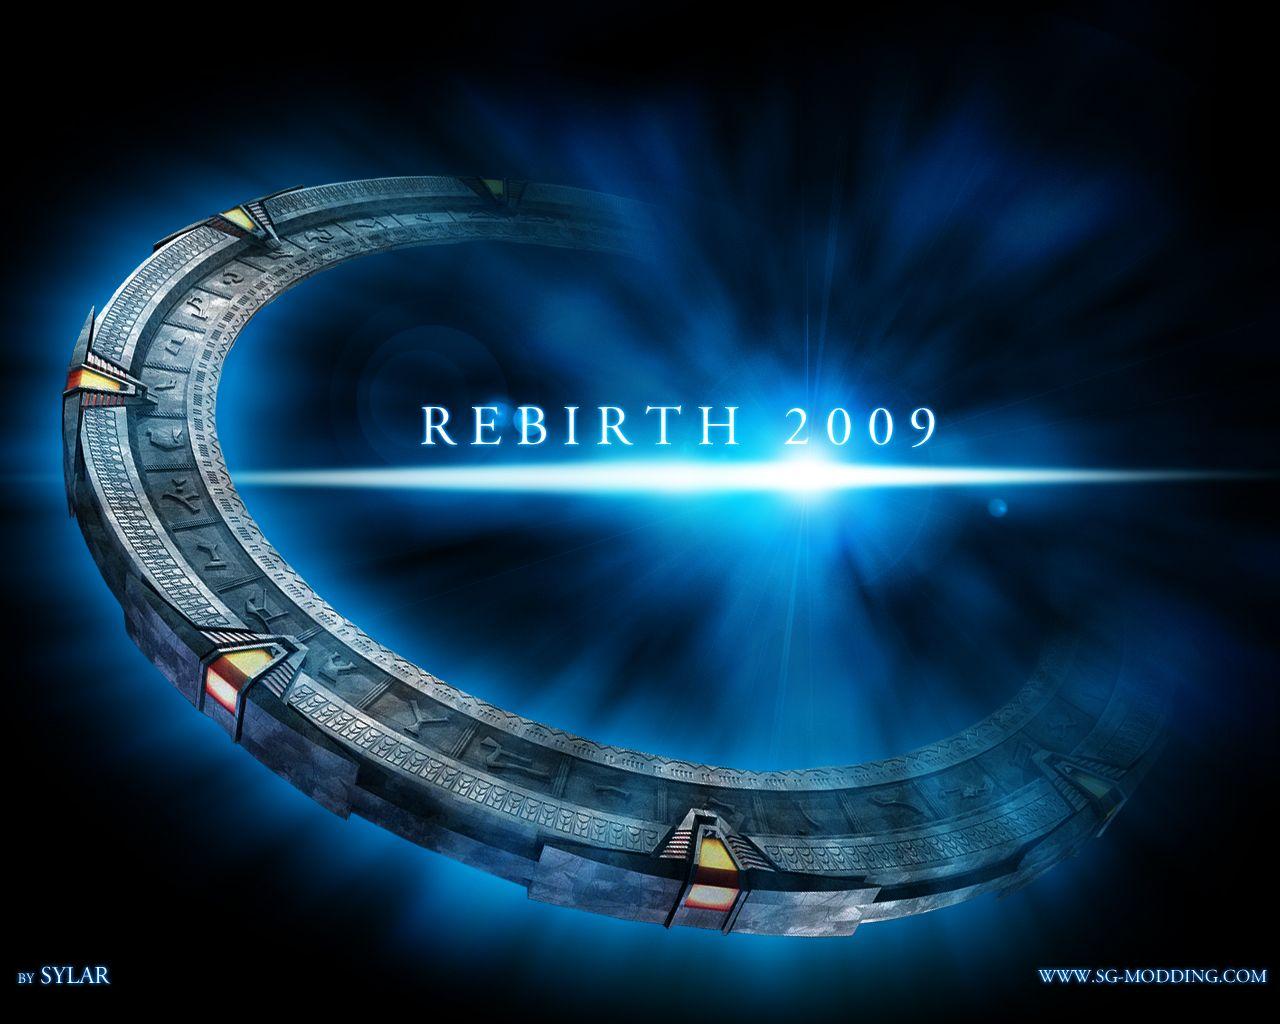 War Pegasus Logo - Next mod logo image - Stargate - Empire at War: Pegasus Chronicles ...